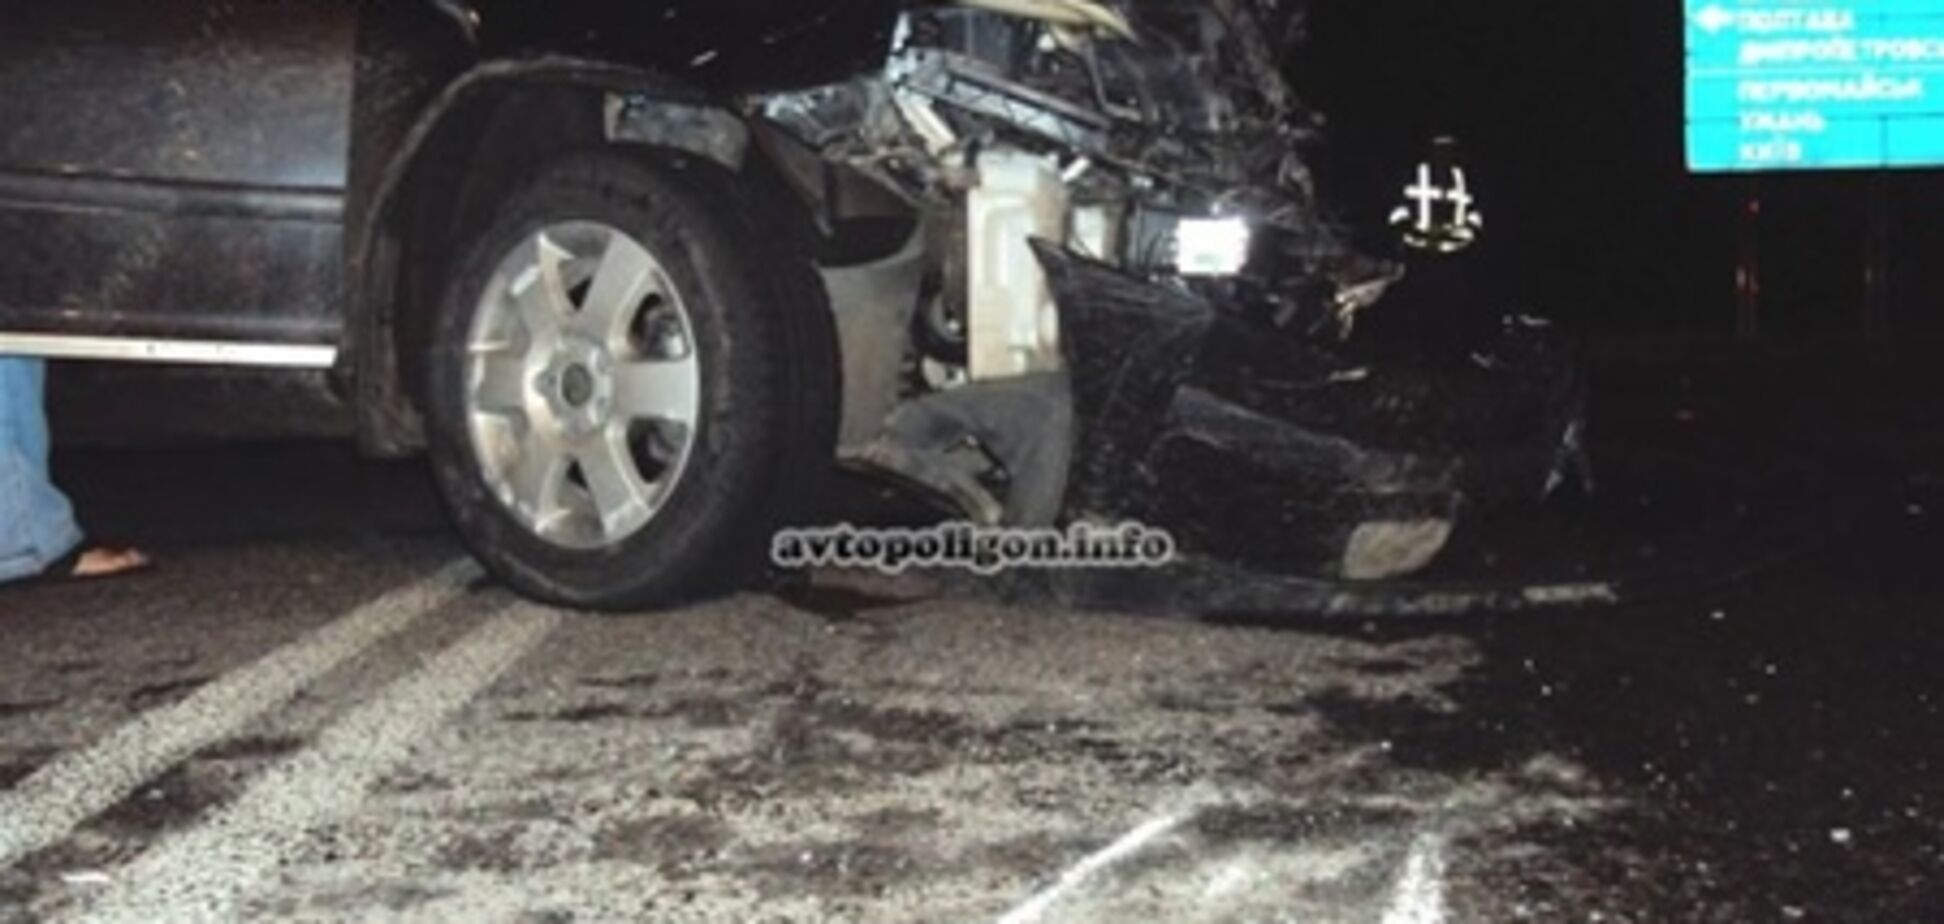 Пьяный водитель Skoda протаранил Dacia, из-за чего погибли двое человек, лег на траву и запел